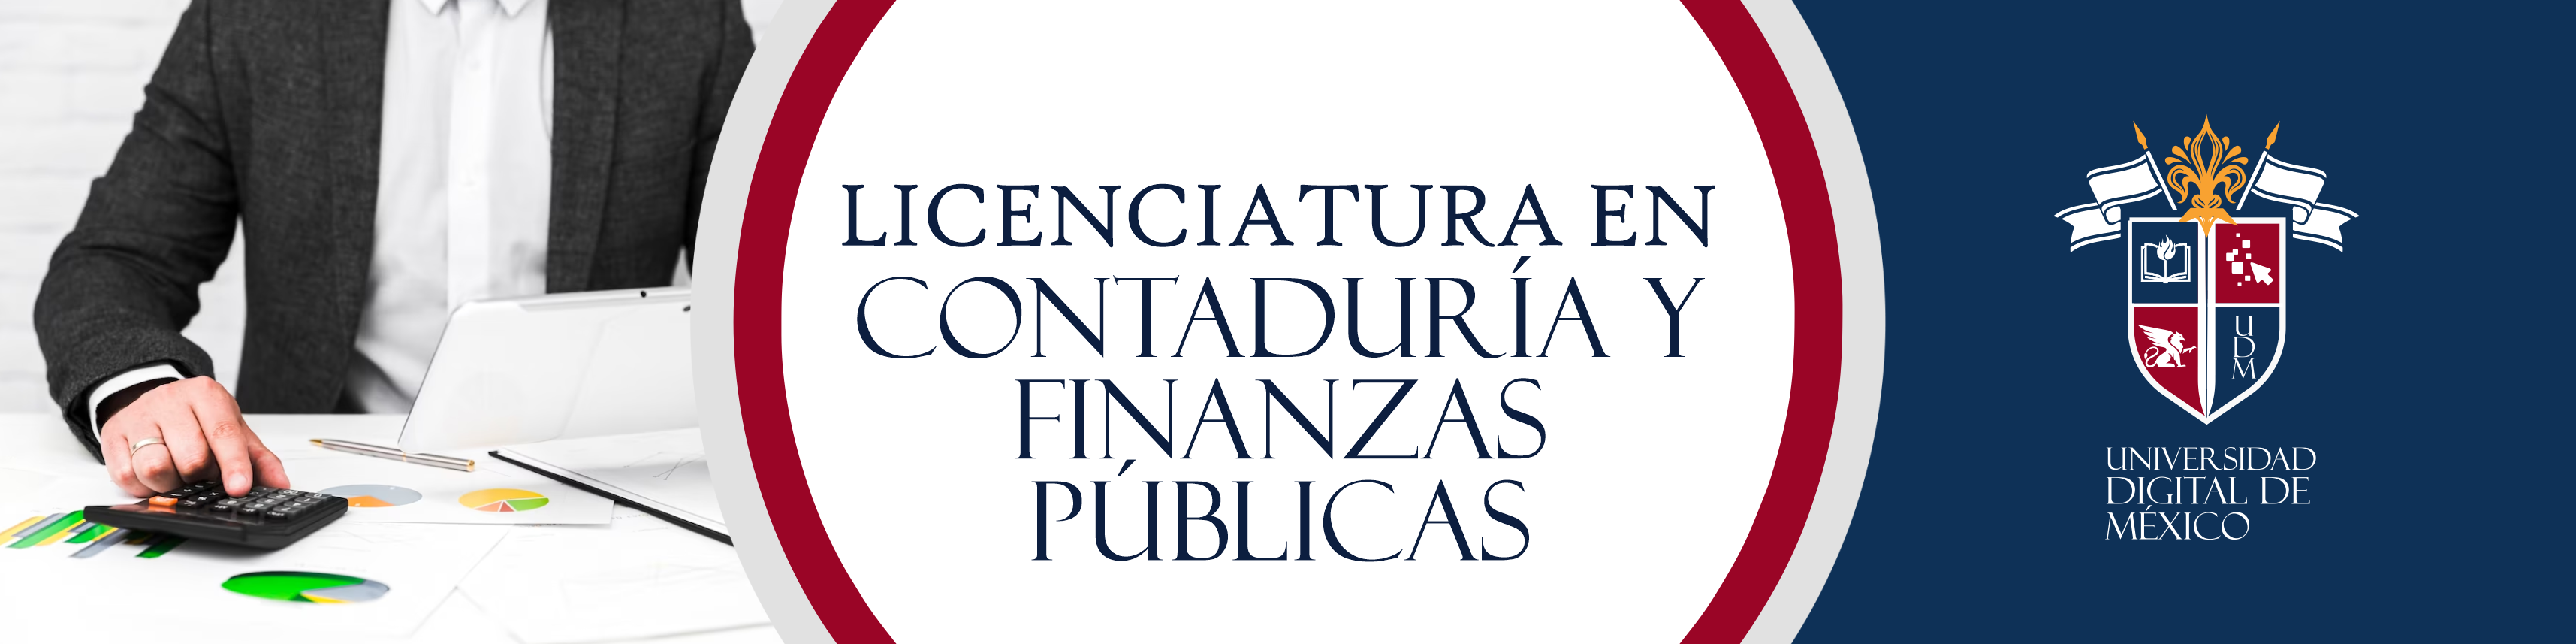 Licenciatura en Contaduría y Finanzas Públicas.